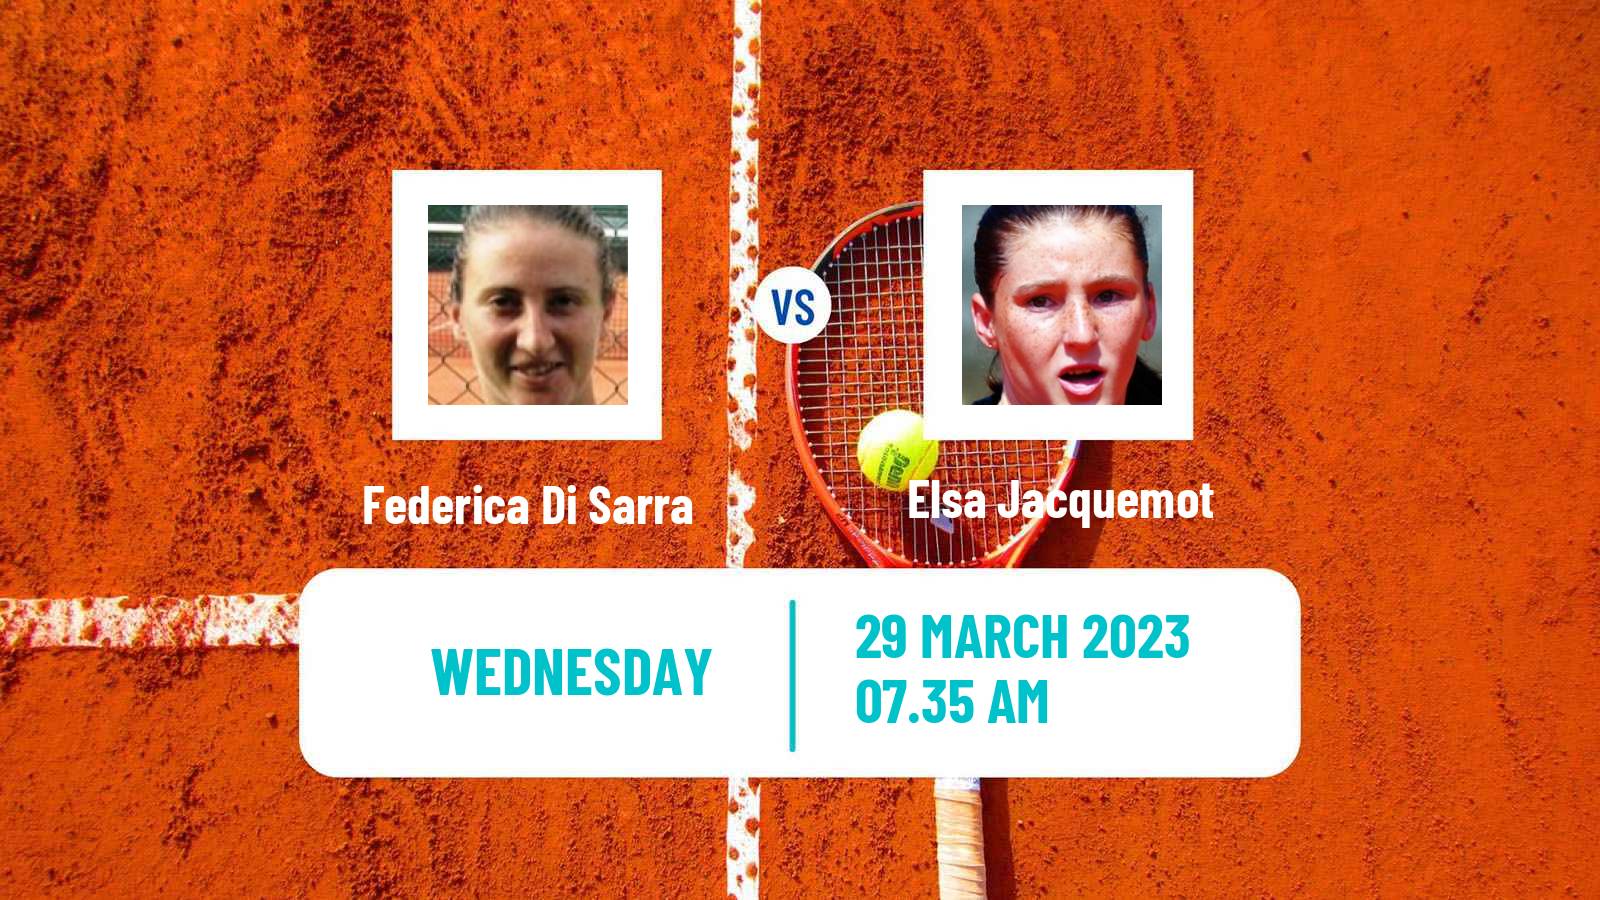 Tennis ITF Tournaments Federica Di Sarra - Elsa Jacquemot